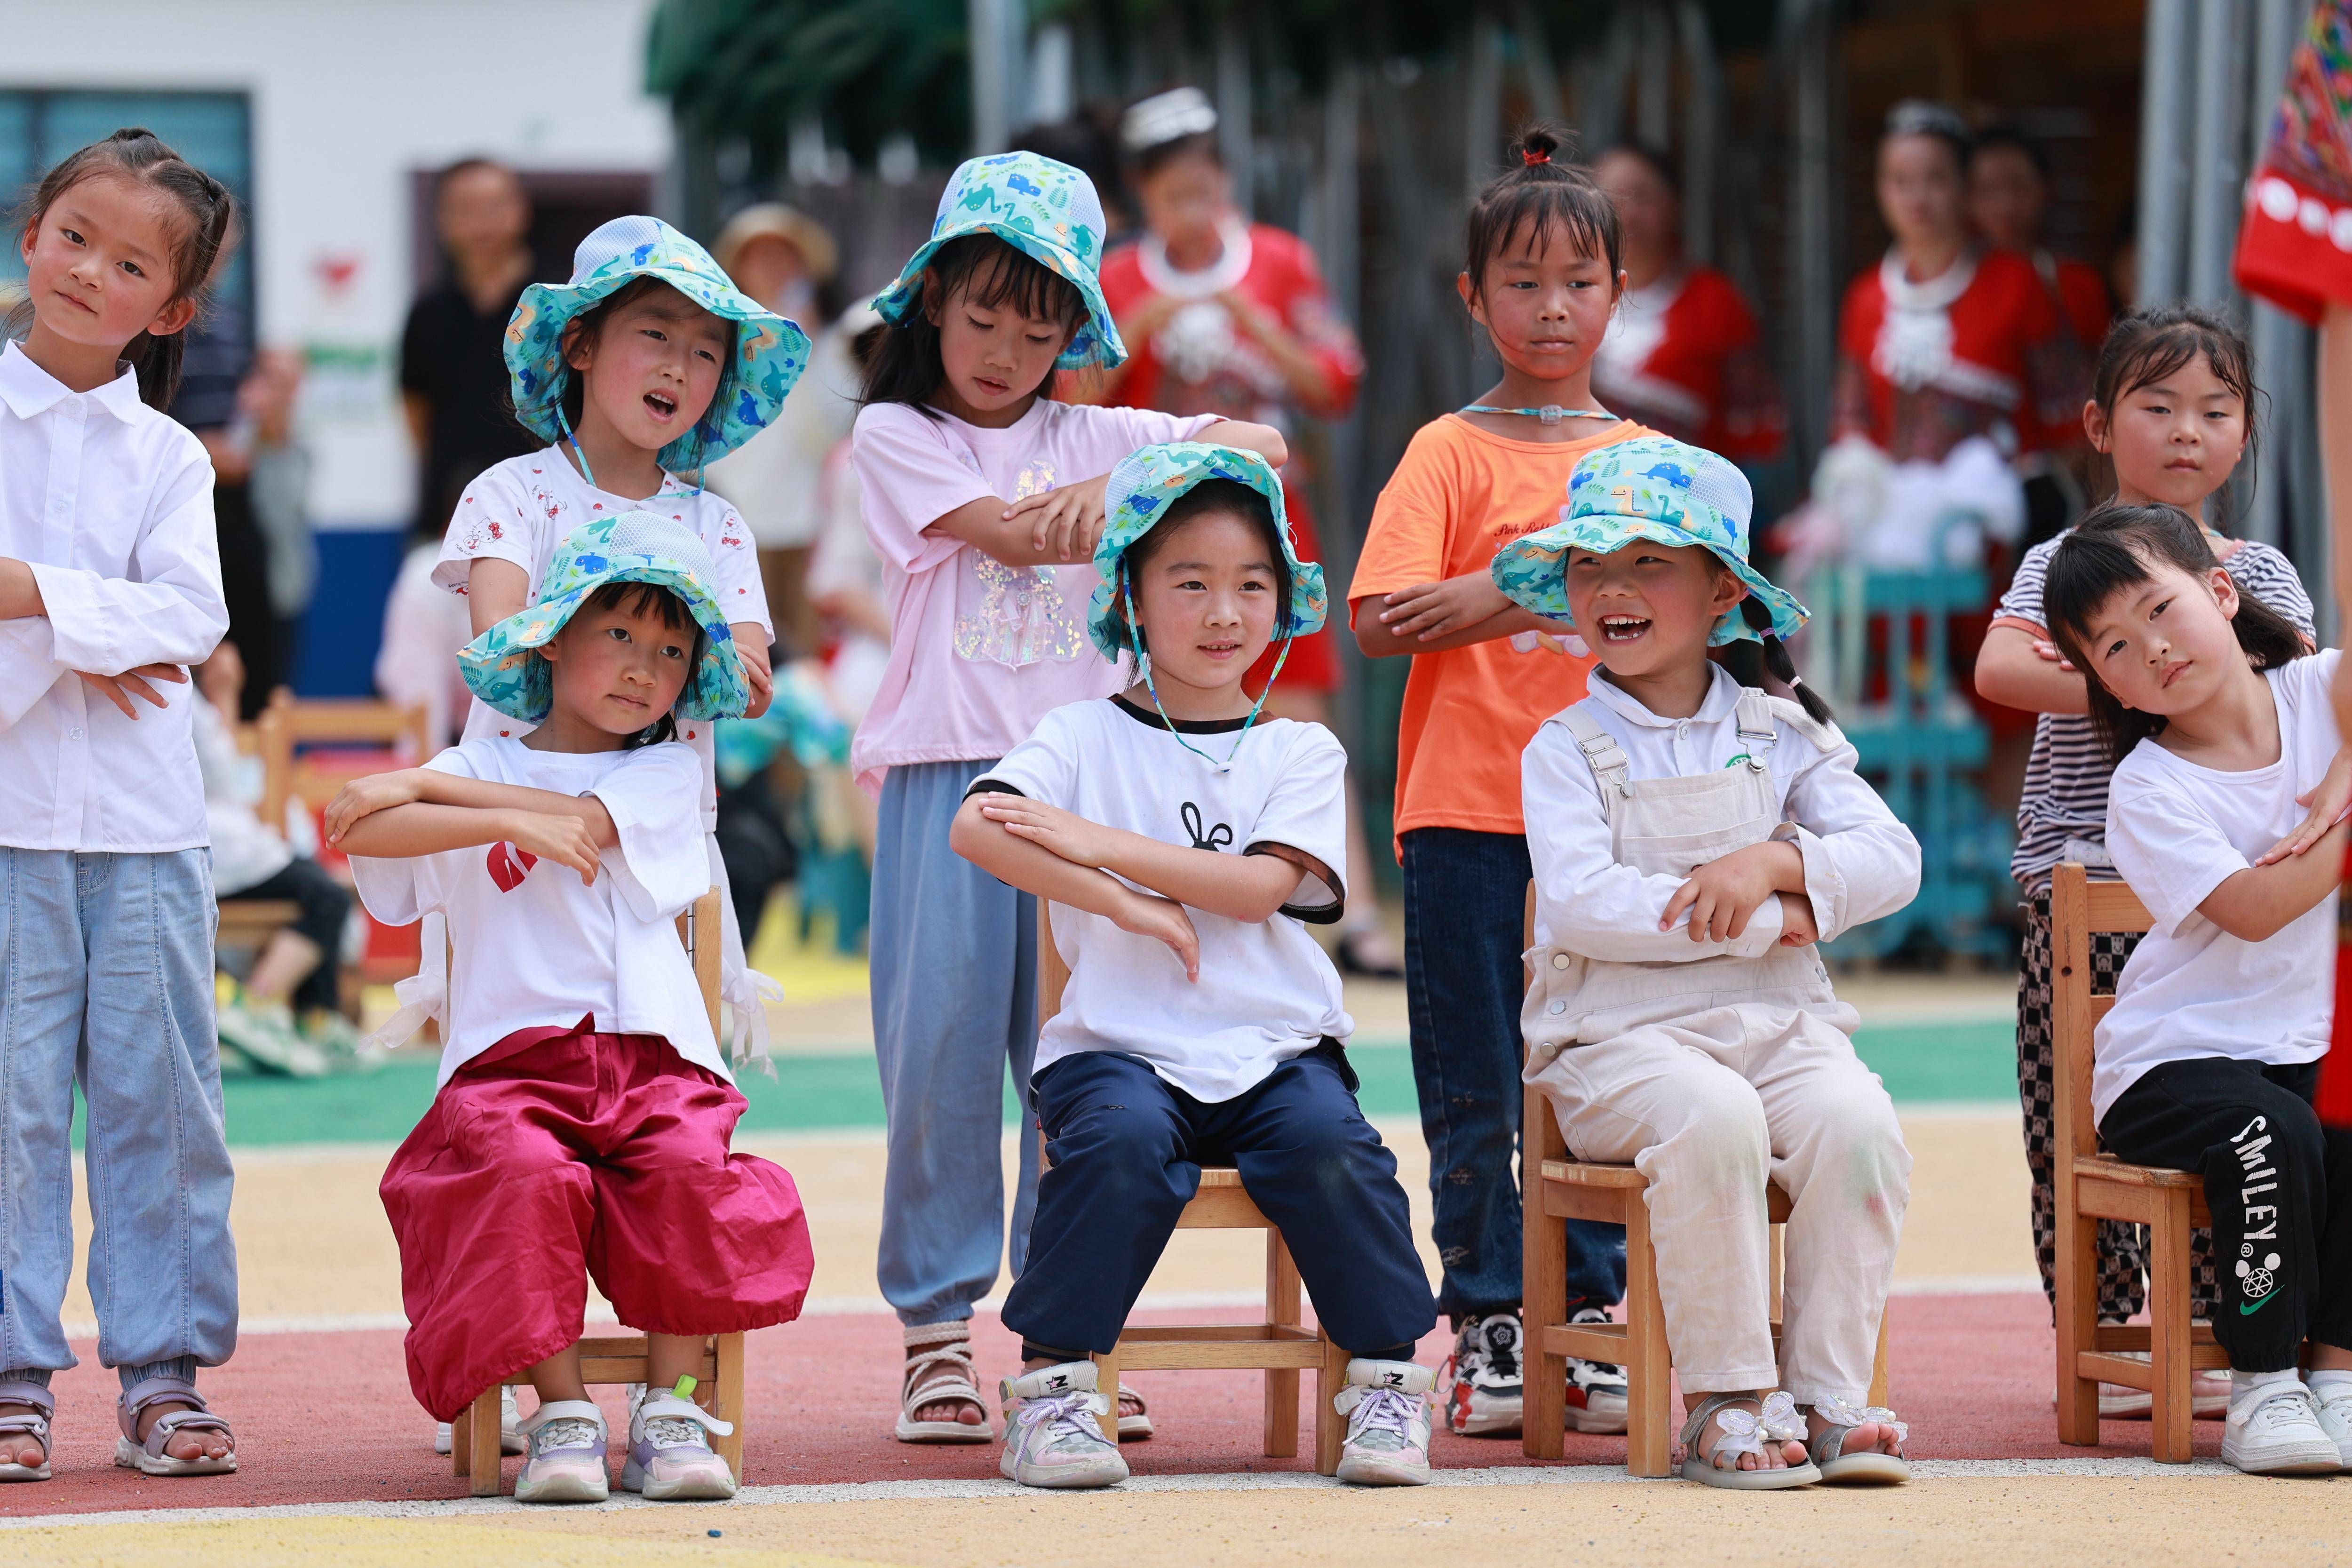 柏杨林街道的七星关区第三幼儿园，孩子们在表演节目（7月13日摄）。 新华社记者 刘续 摄.jpeg